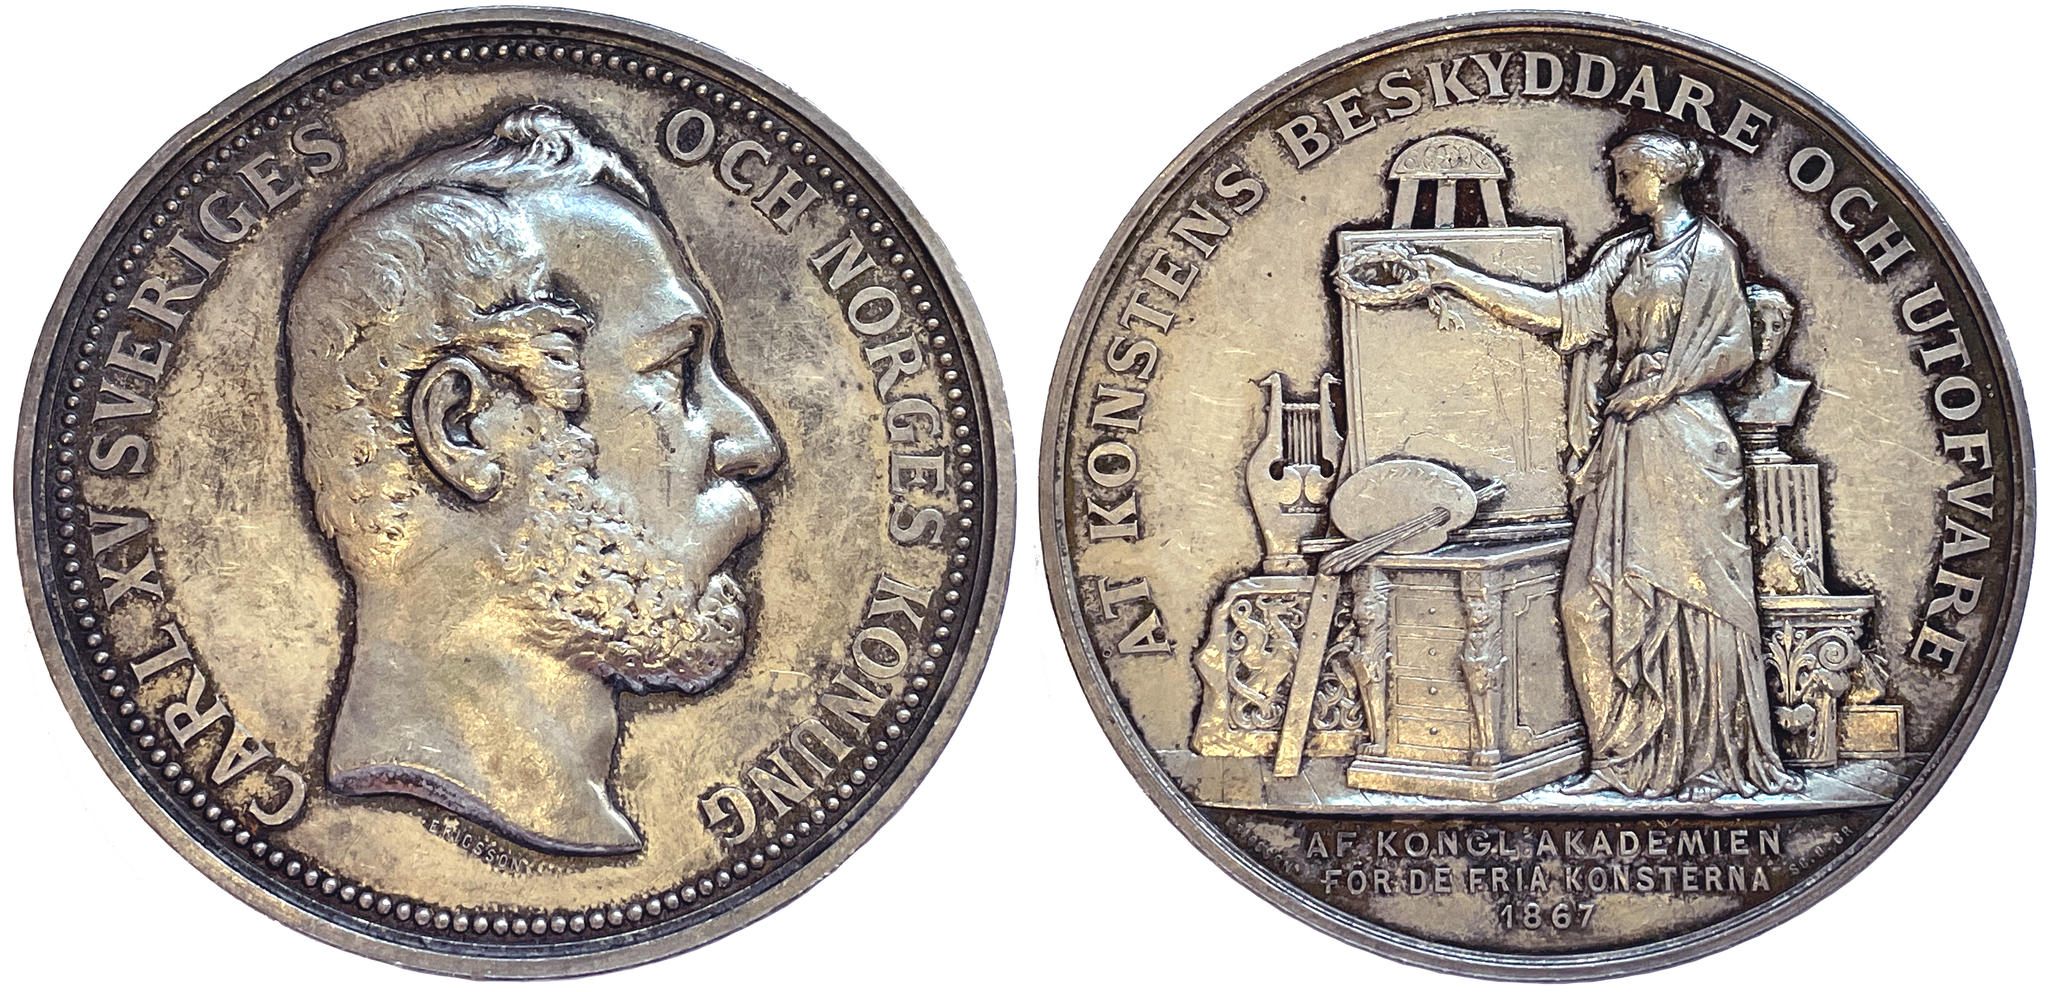 Karl XV som beskyddare av akademien för de fria konsterna 1867 av Ericsson